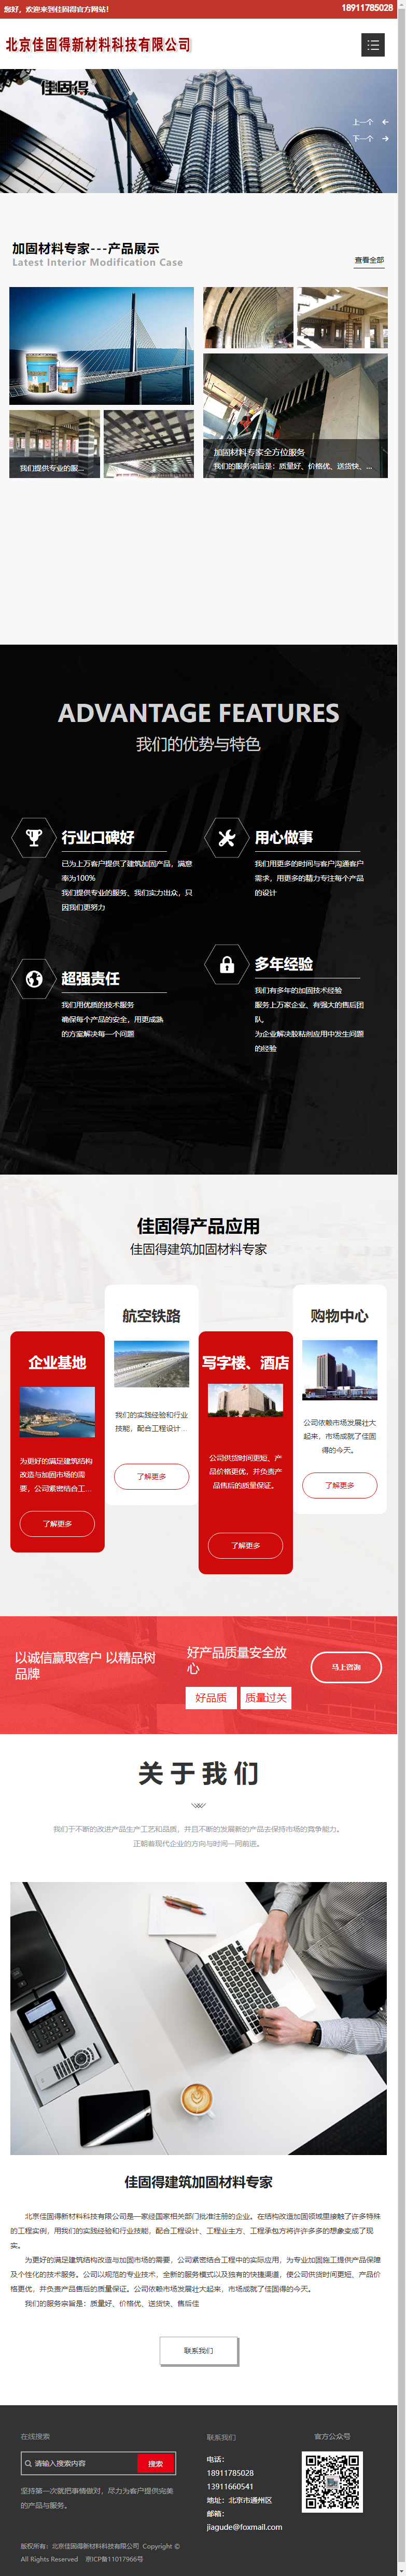 北京佳固得新材料科技有限公司网站案例